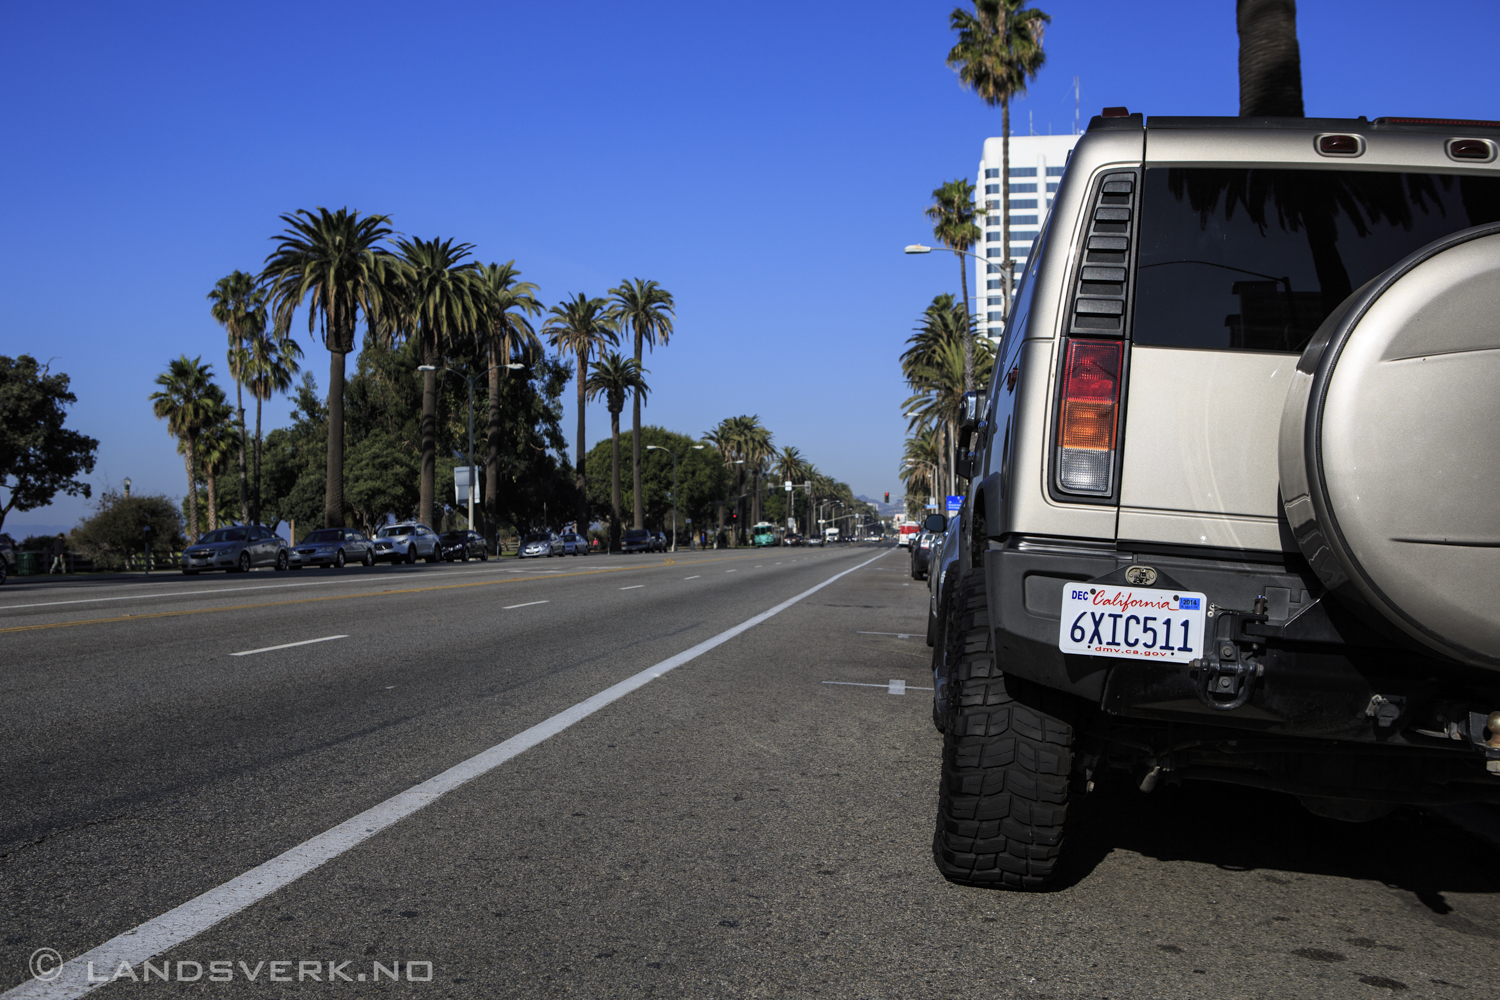 Santa Monica, California.

(Canon EOS 5D Mark III / Canon EF 24-70mm f/2.8 L USM)